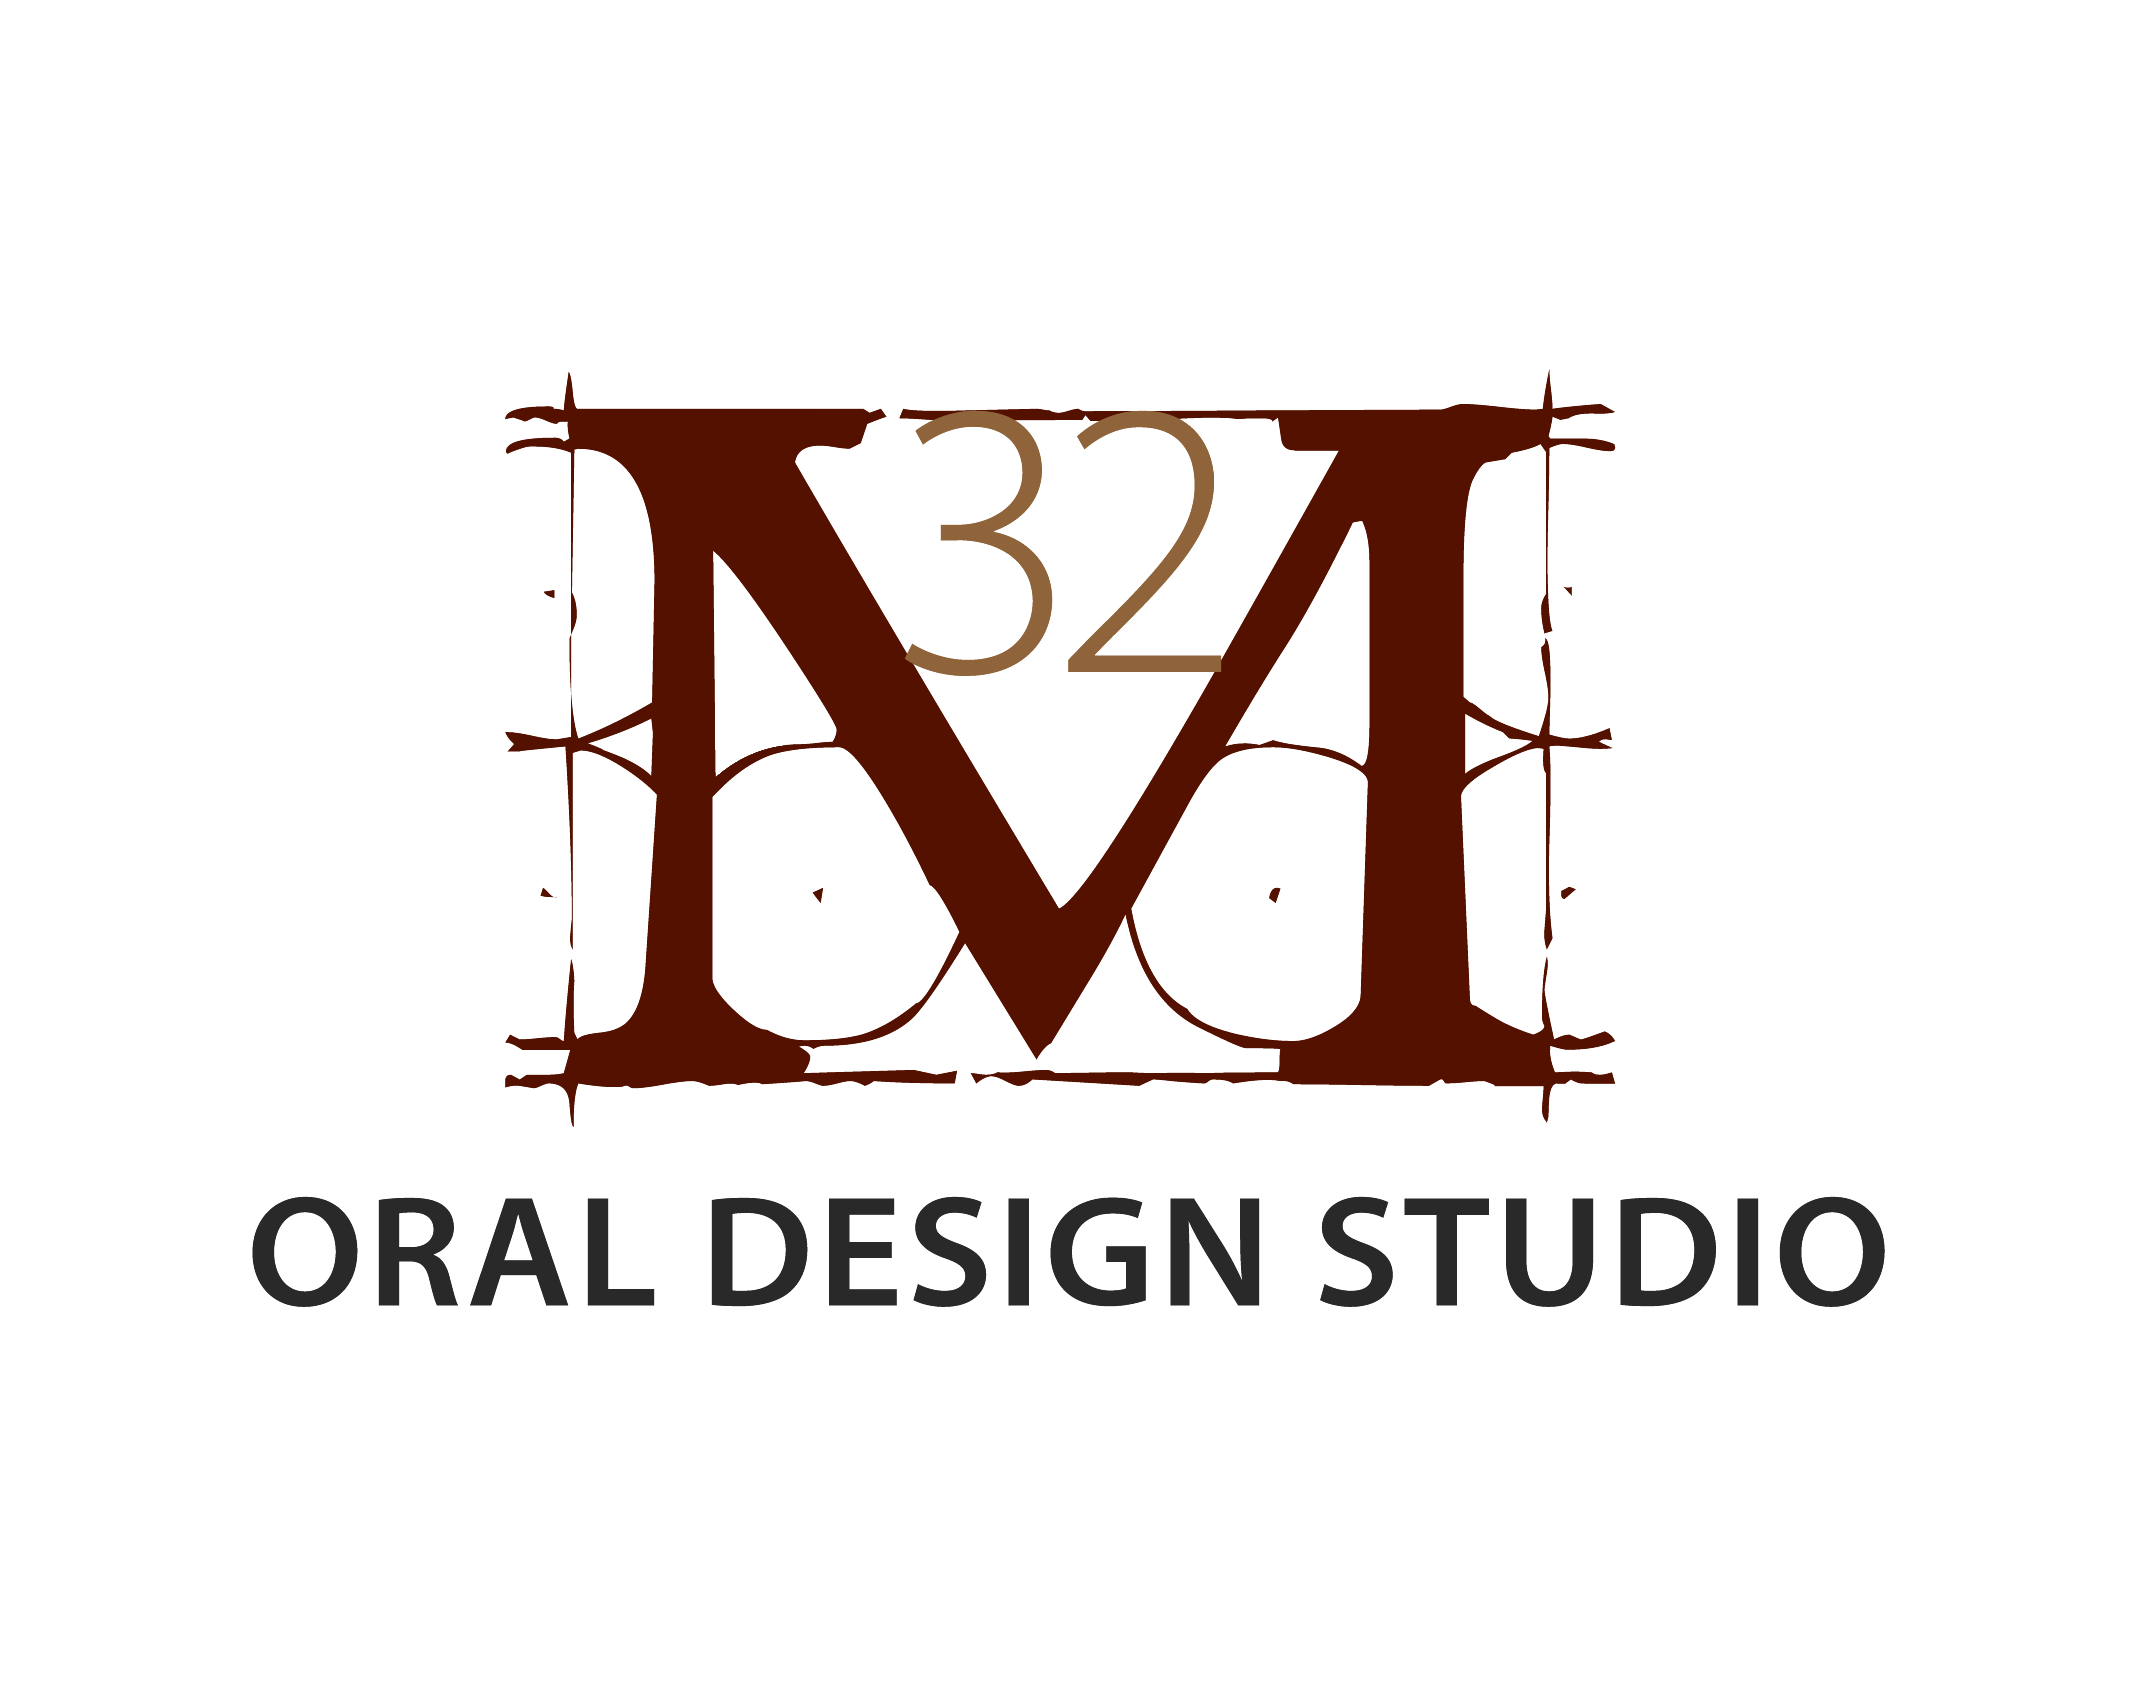 M32 Oral Design Studio